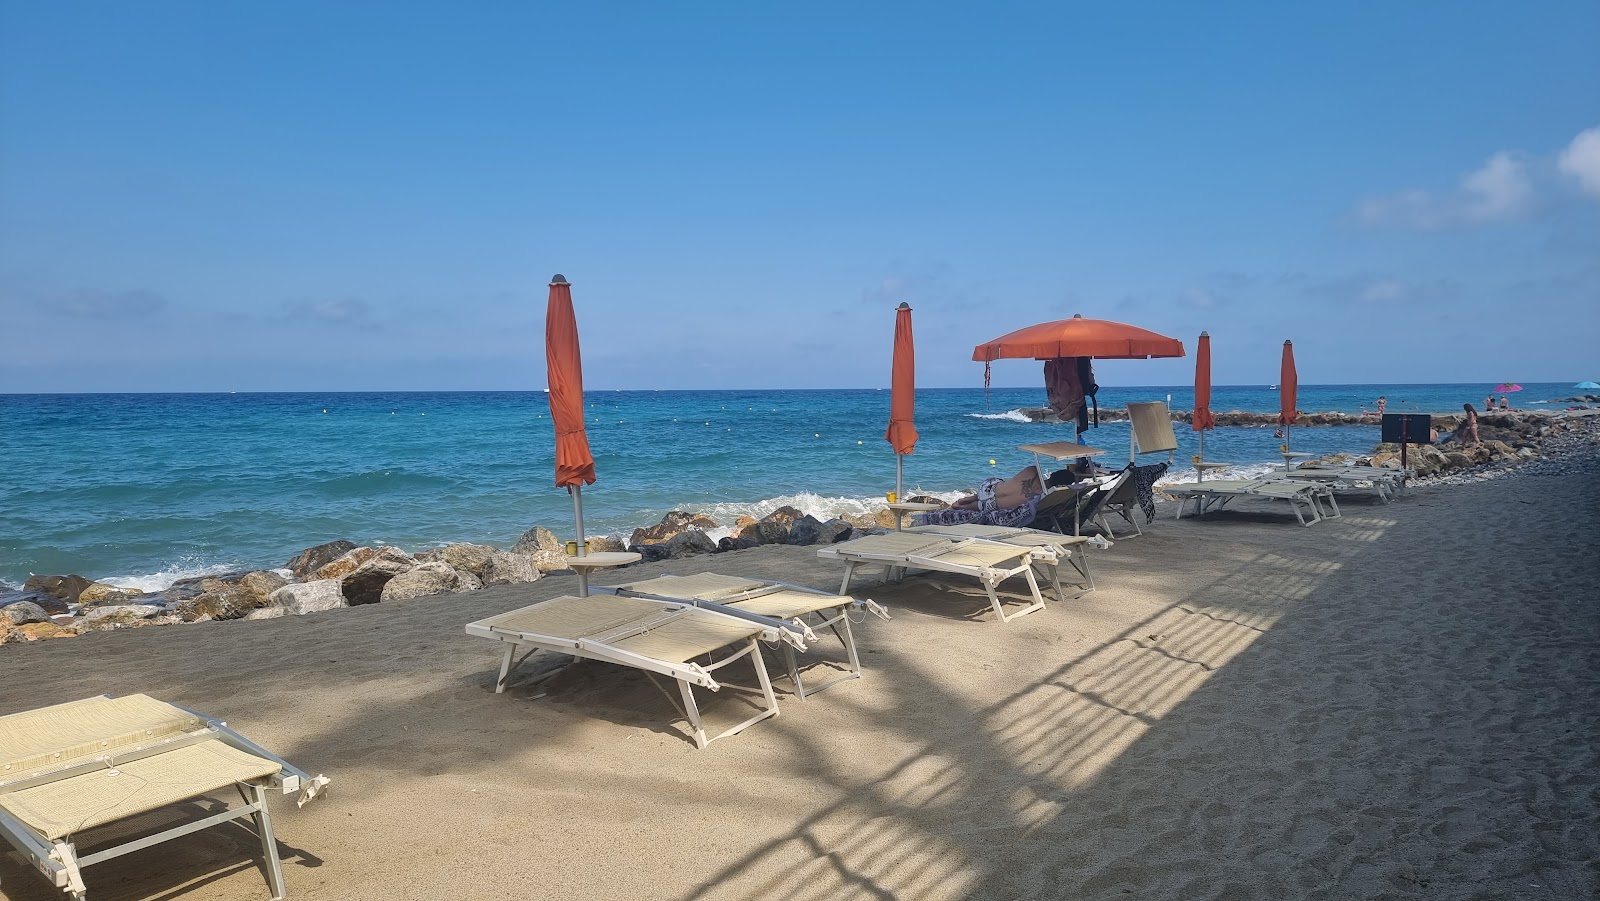 Bagni Capo Mele'in fotoğrafı geniş plaj ile birlikte